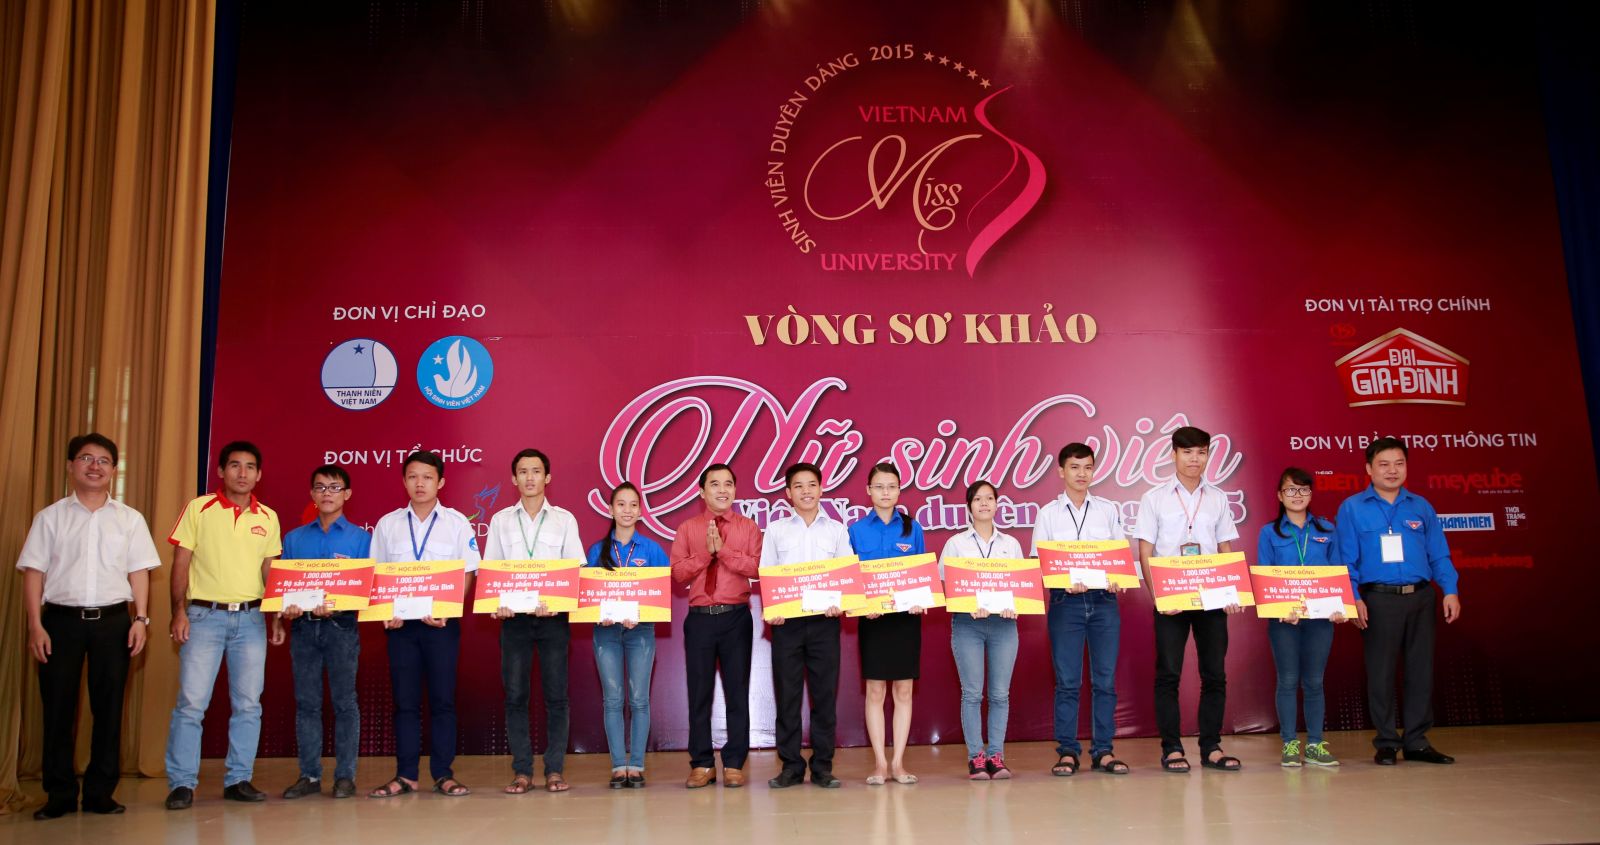 Nữ sinh Sài thành khoe tài, sắc tại vòng Sơ khảo cuộc thi VMU 2015